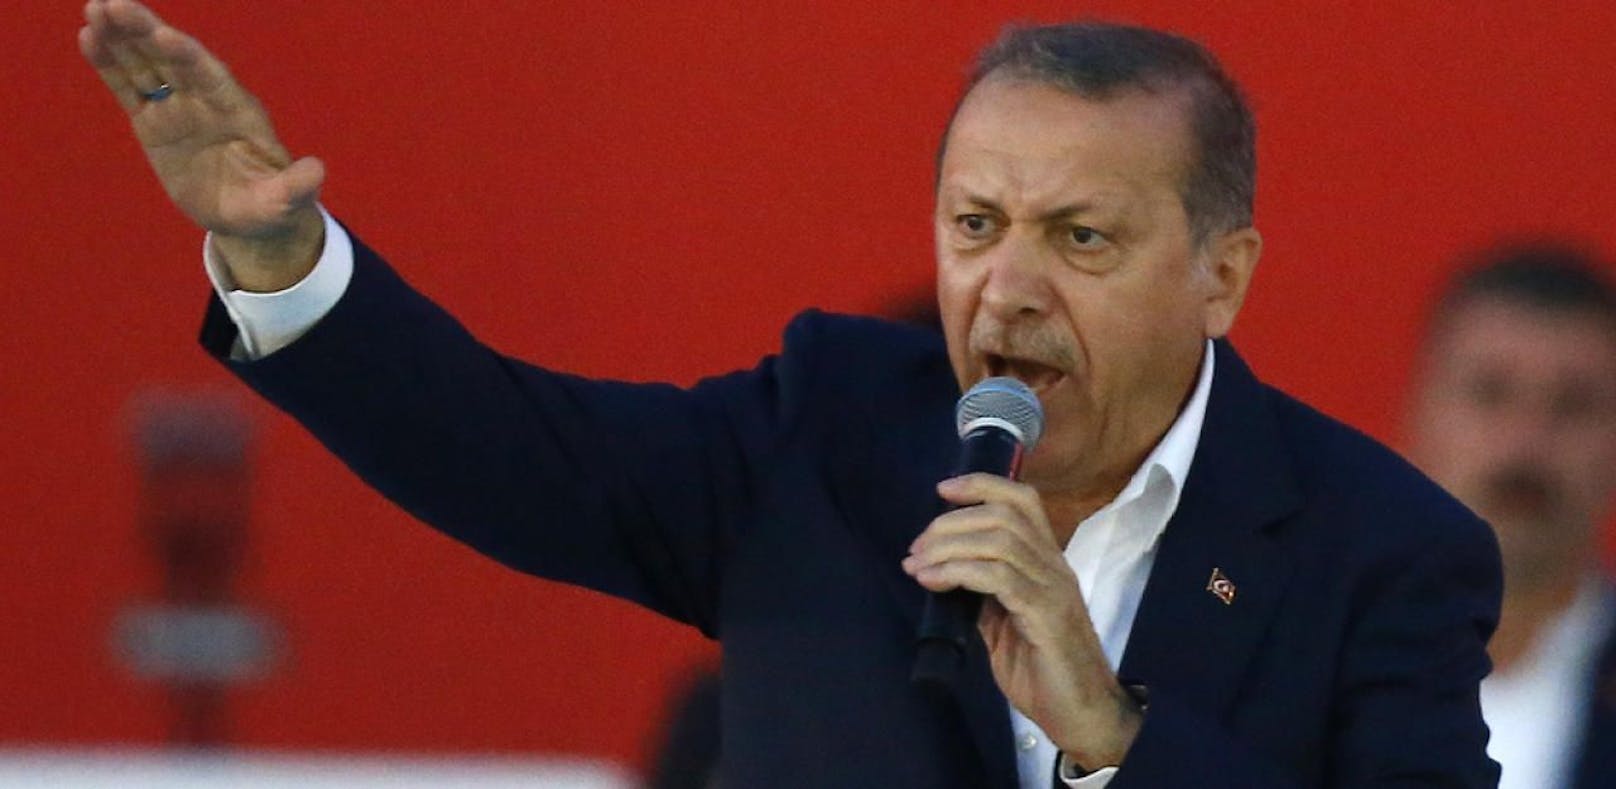 Erdogan nennt EU "Kreuzritter-Allianz"